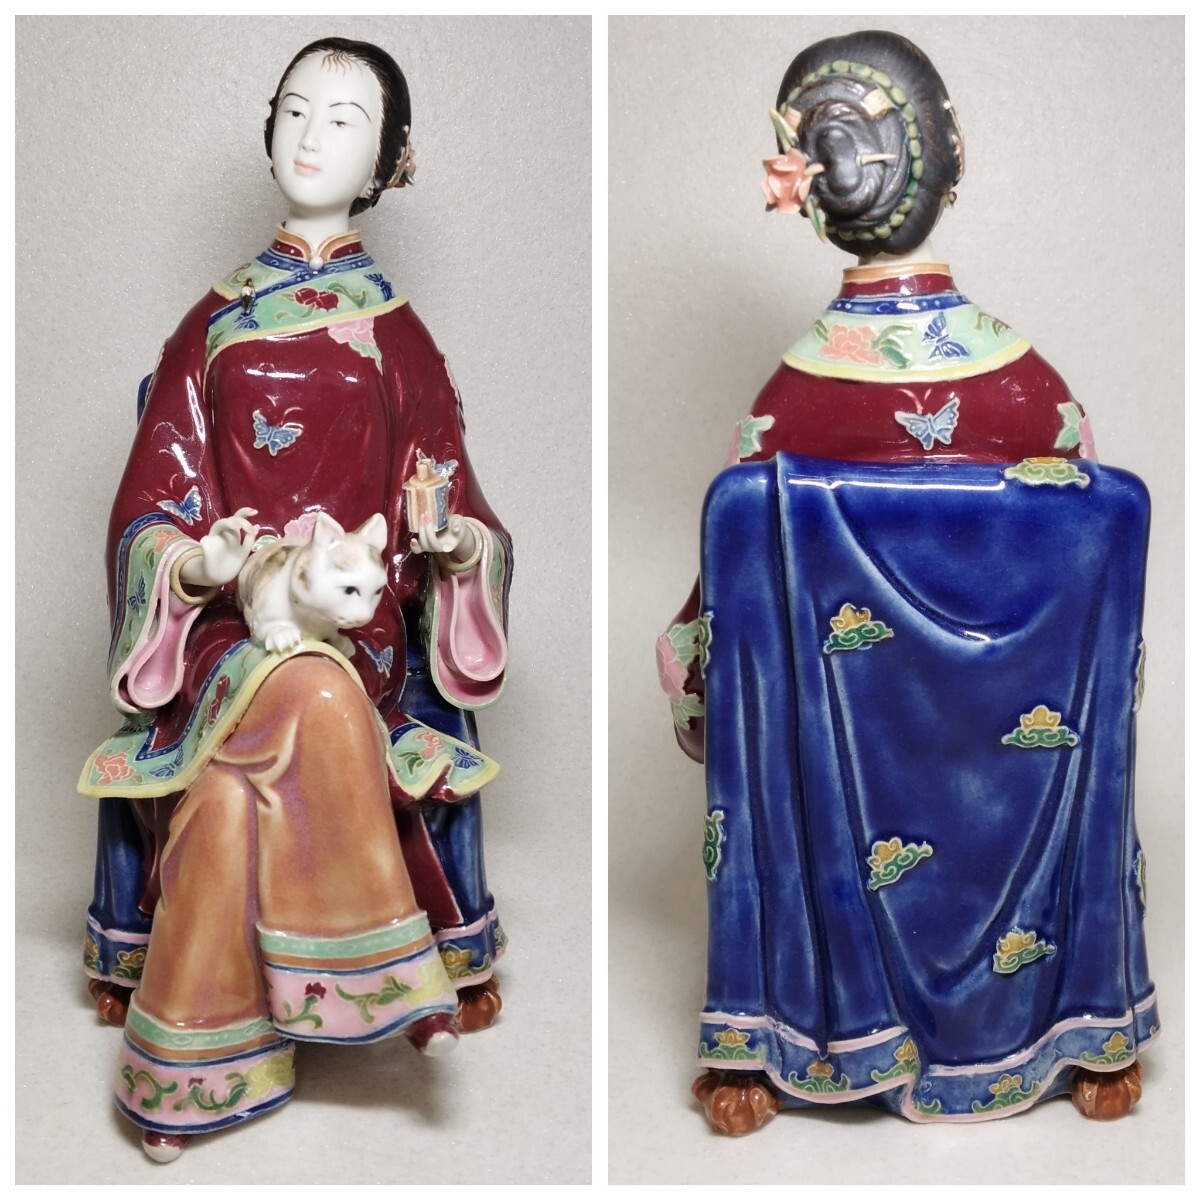 貴婦人像 女性像 人形 陶器人形 陶器 置物 装飾 中国? 猫 色絵 オブジェ アンティーク インテリア ジャンク 民間整理品b_画像2